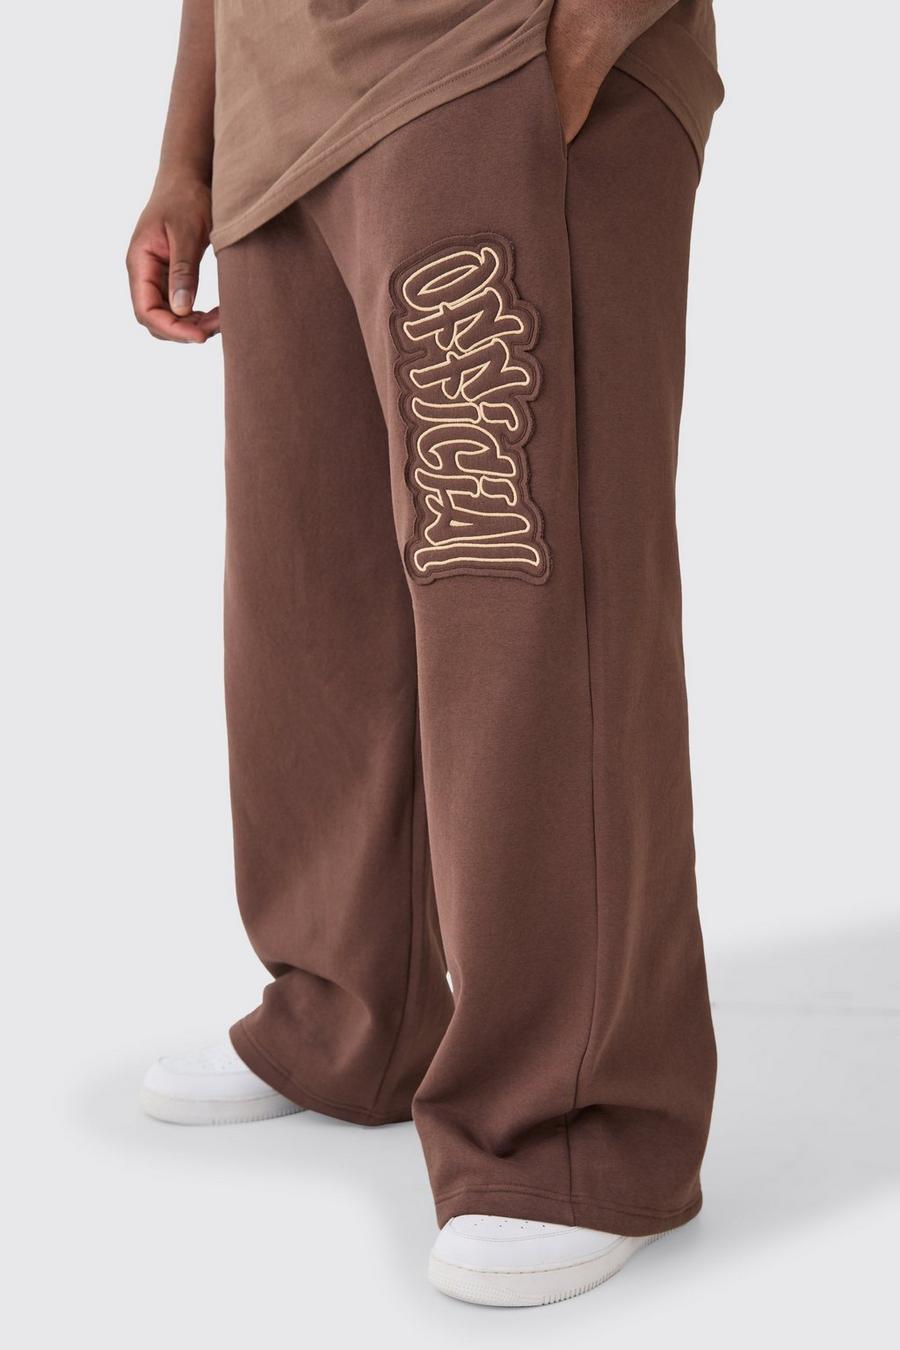 Pantaloni tuta Plus Size a calzata ampia Official con applique, Chocolate image number 1